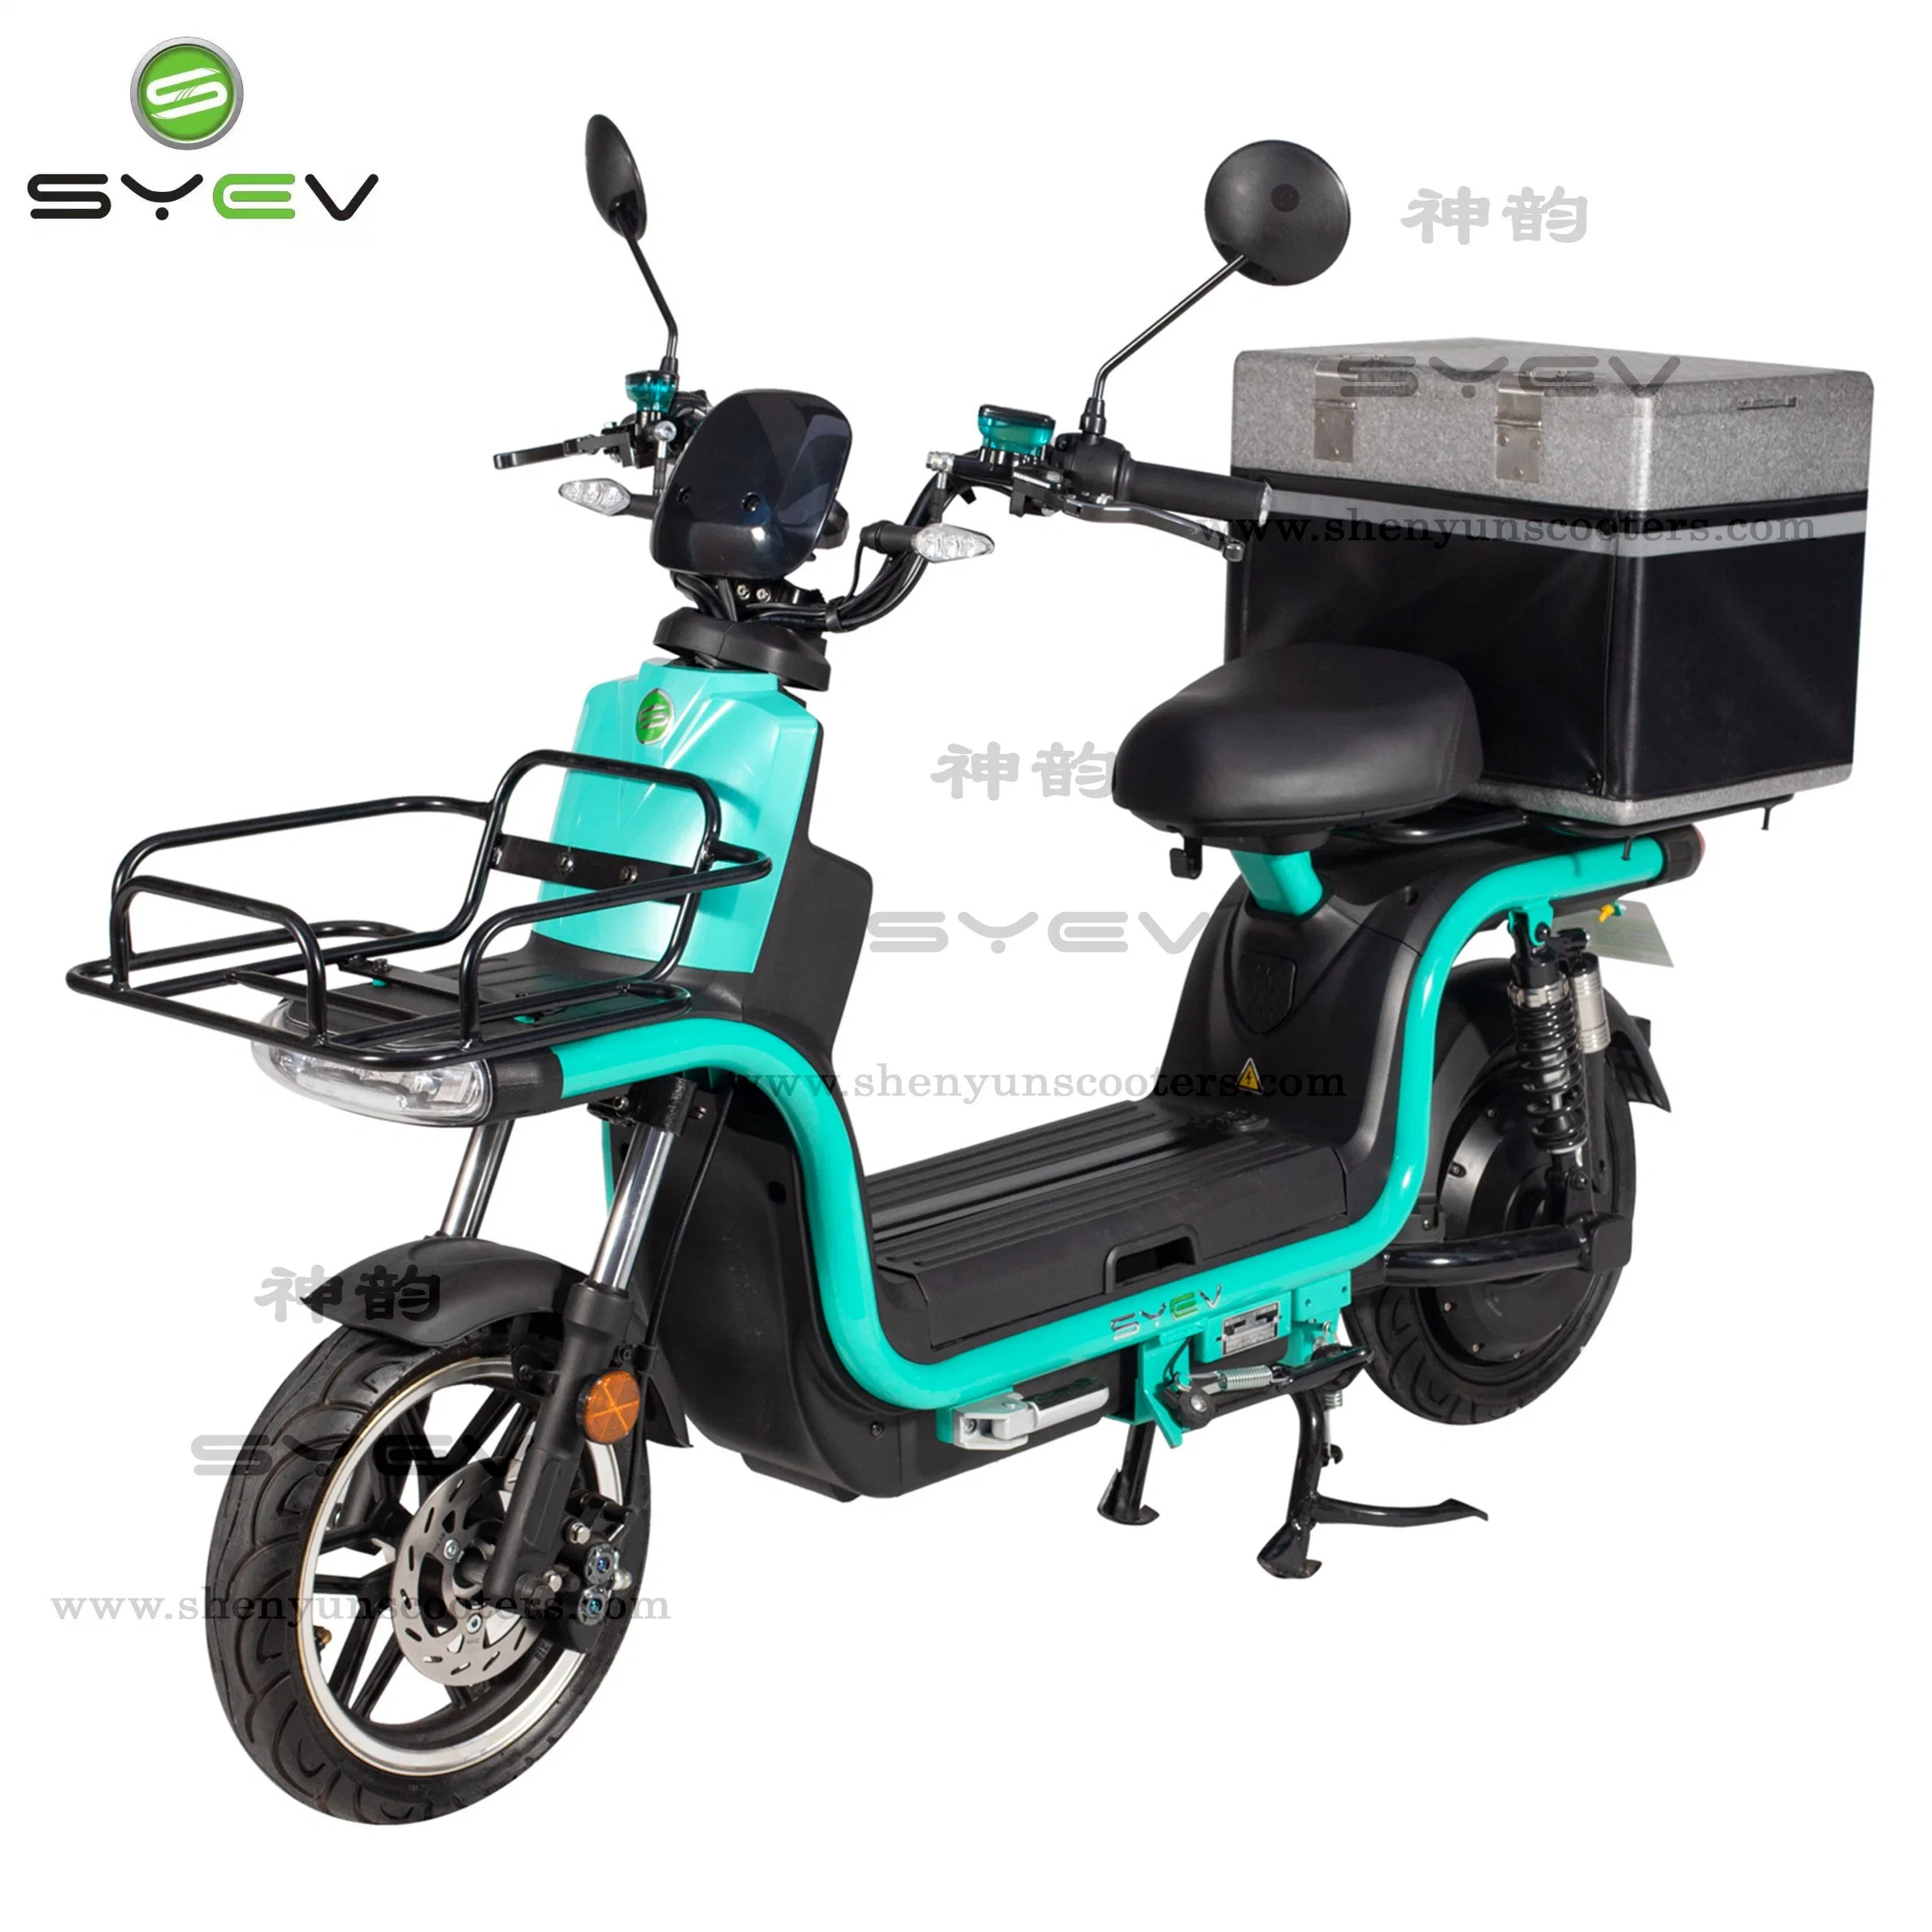 CE/CEE/Coc Electric Motorcycle puissant approuvé pour la livraison de nourriture rapide